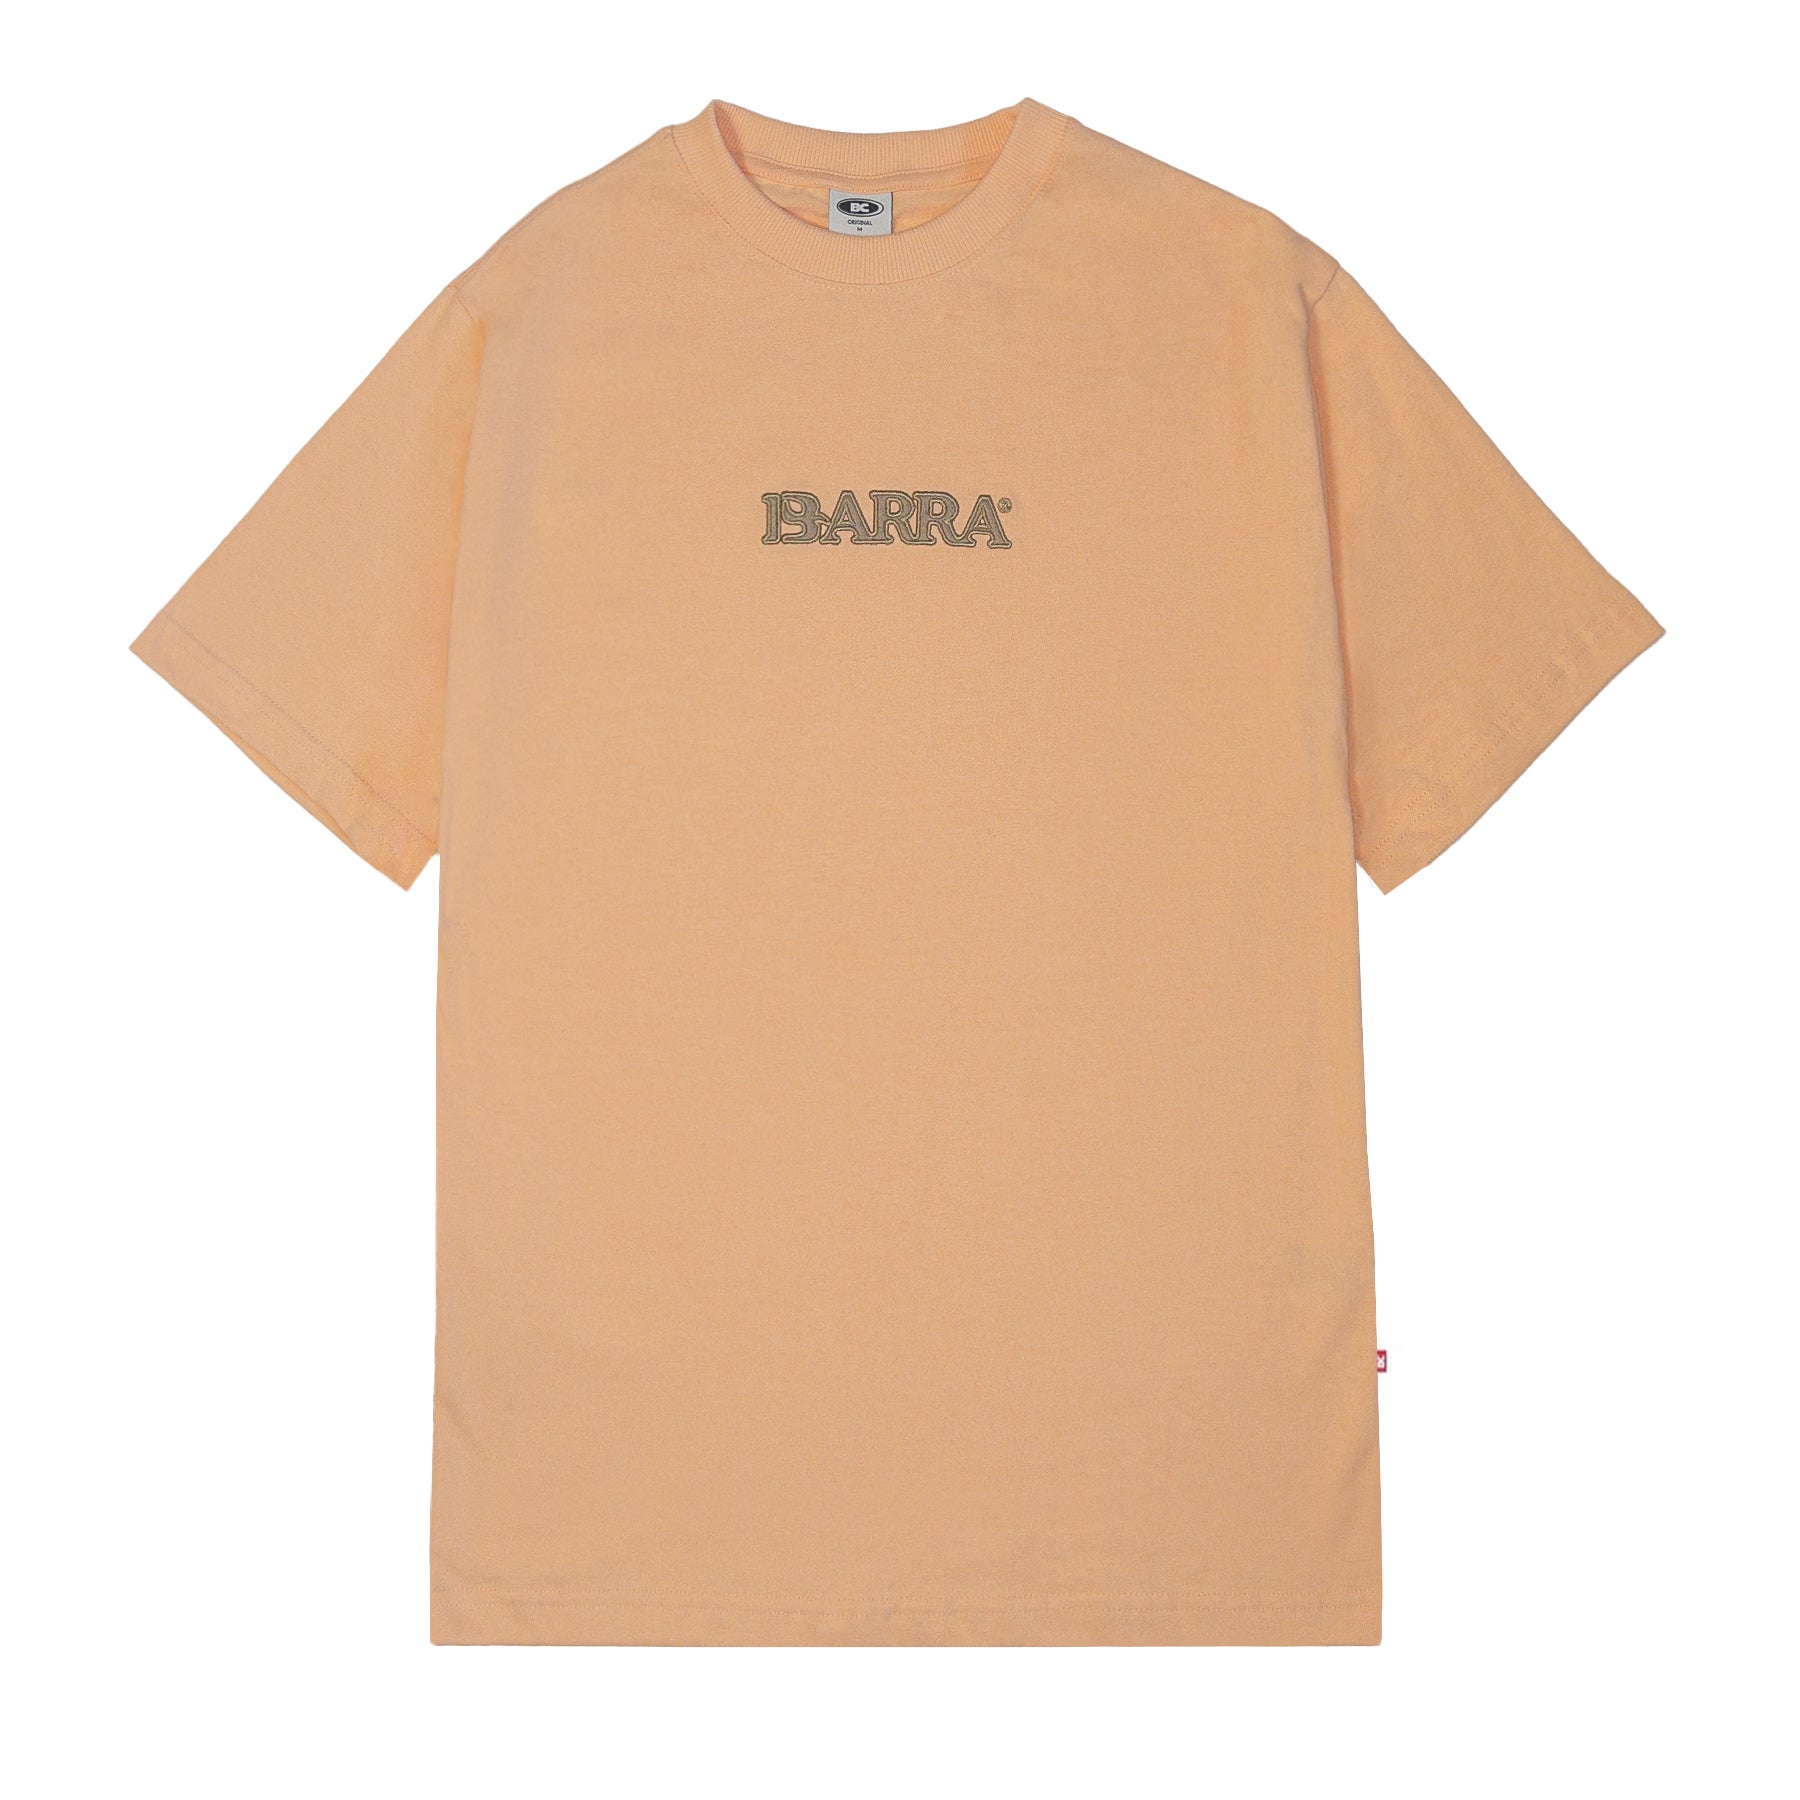 Barra Crew - Camiseta "Textura" Salmão